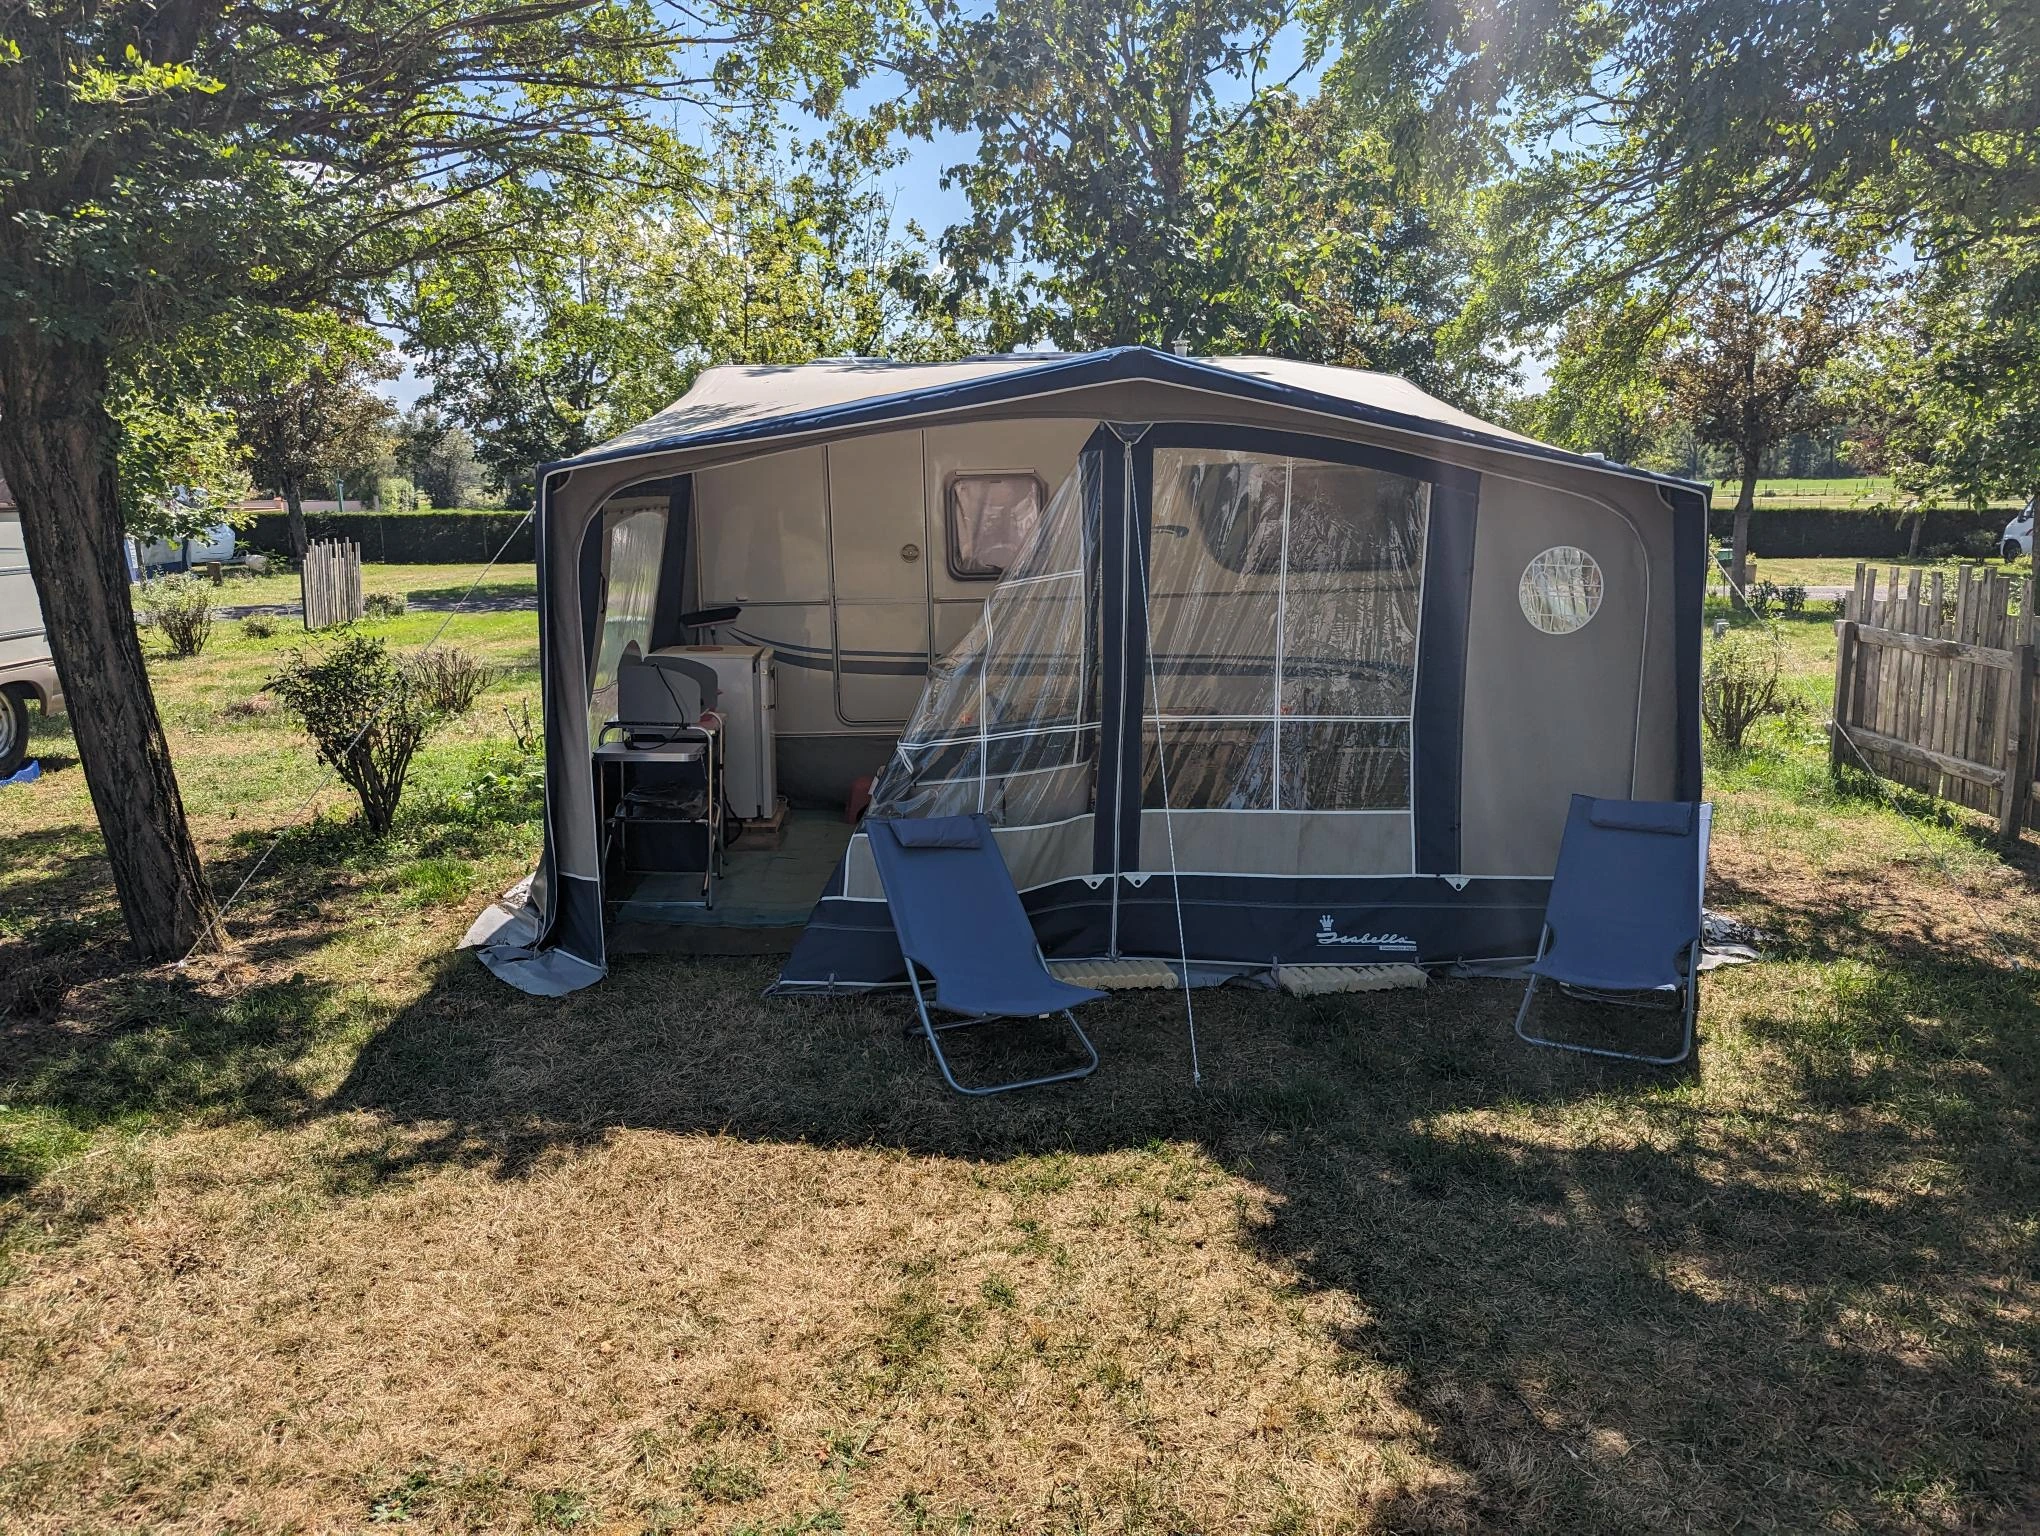 Caravane Camping Dompierre sur besbre